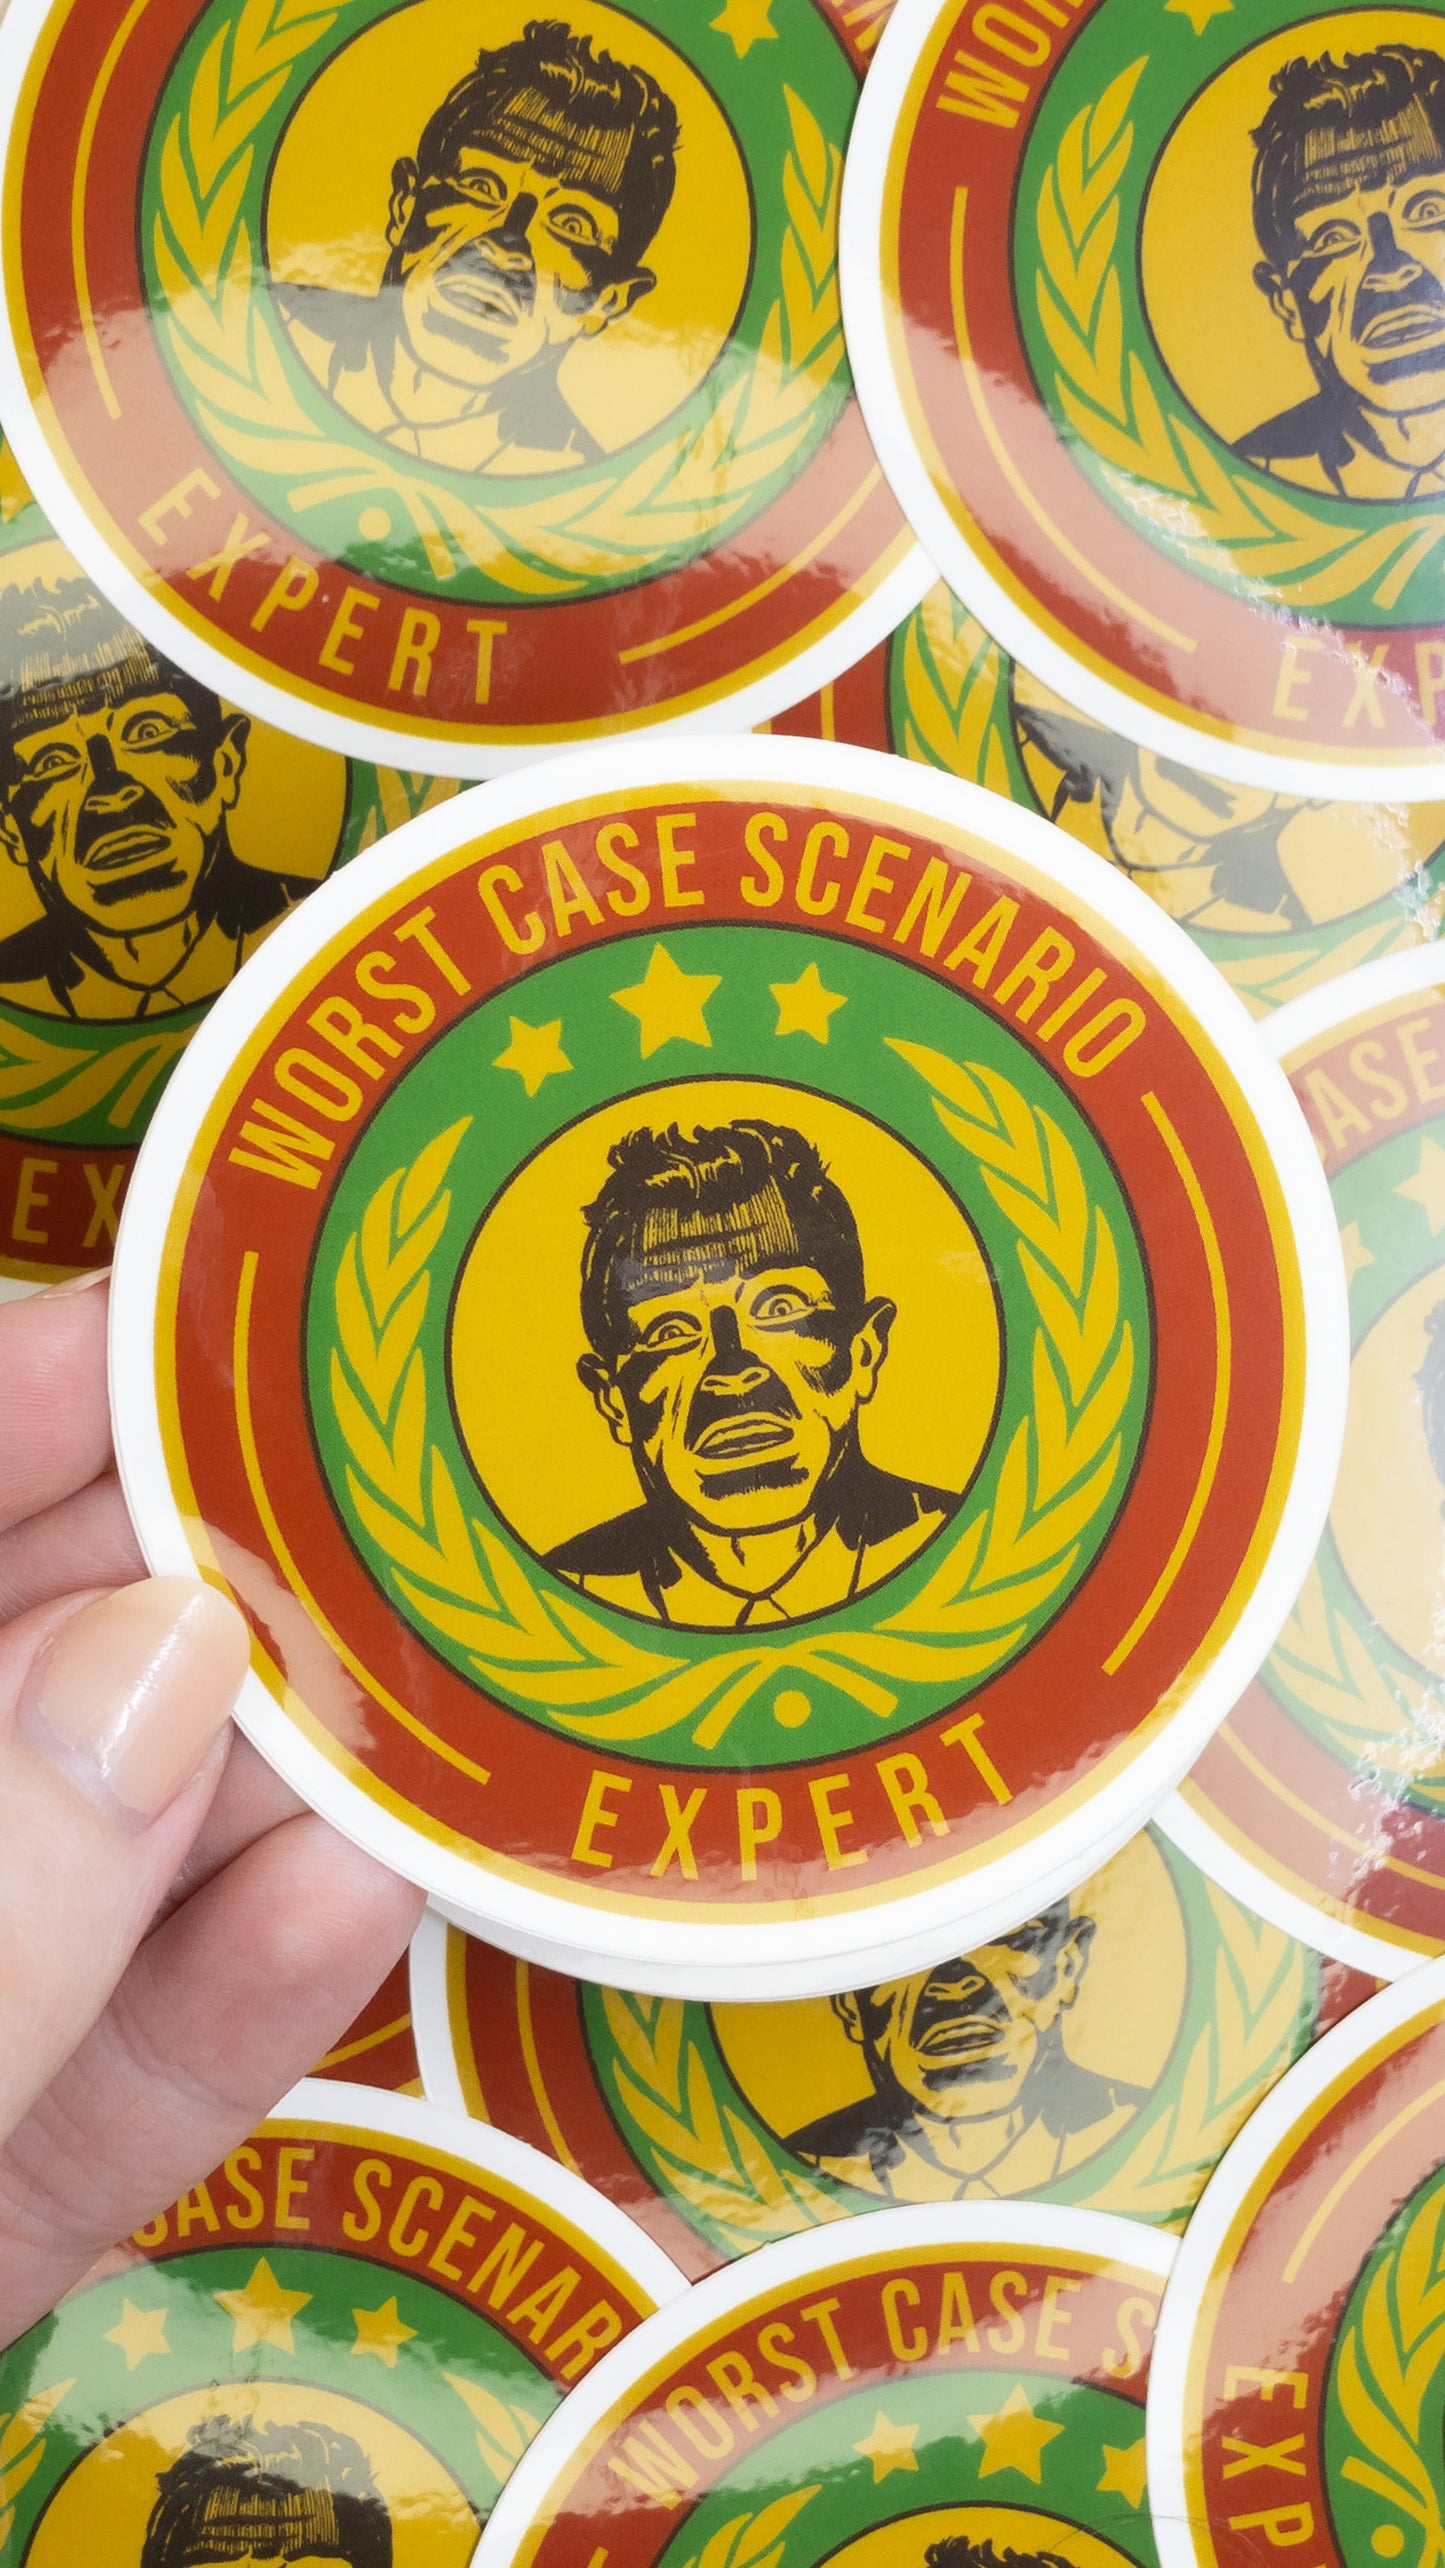 Worst  Case Scenario Expert Vinyl Glossy Sticker 3 inch